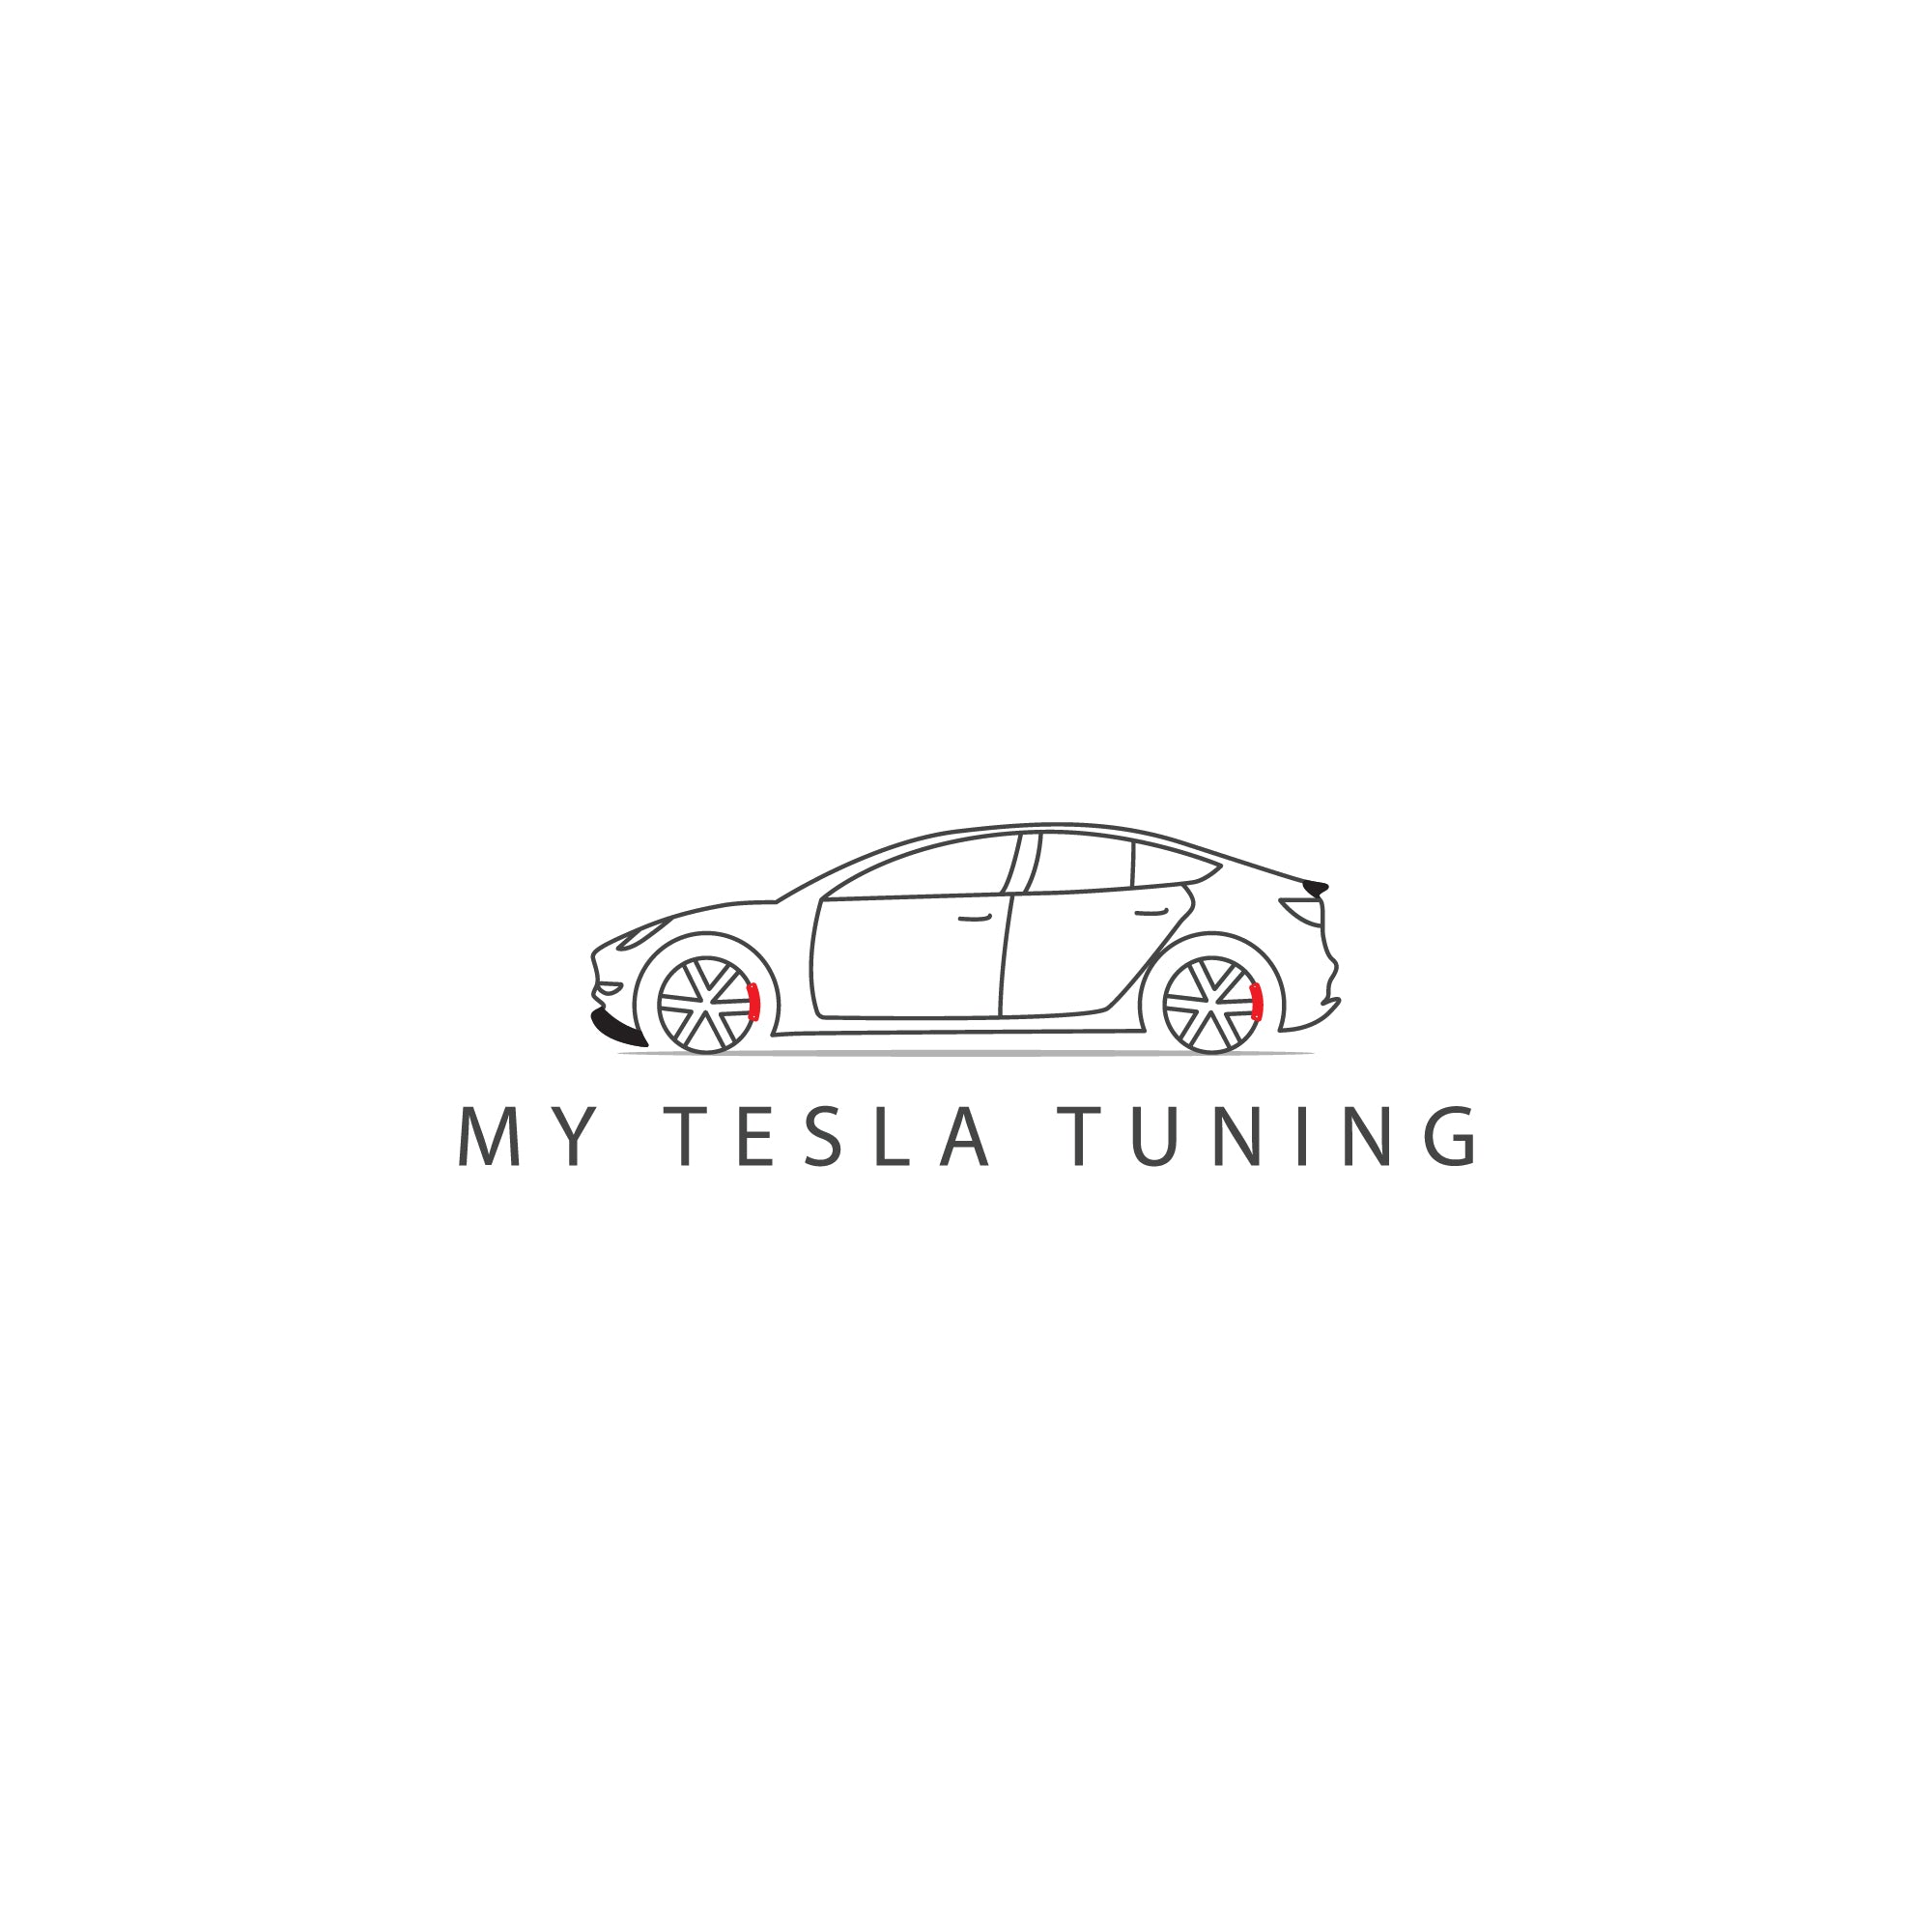 Model X – My Tesla Tuning